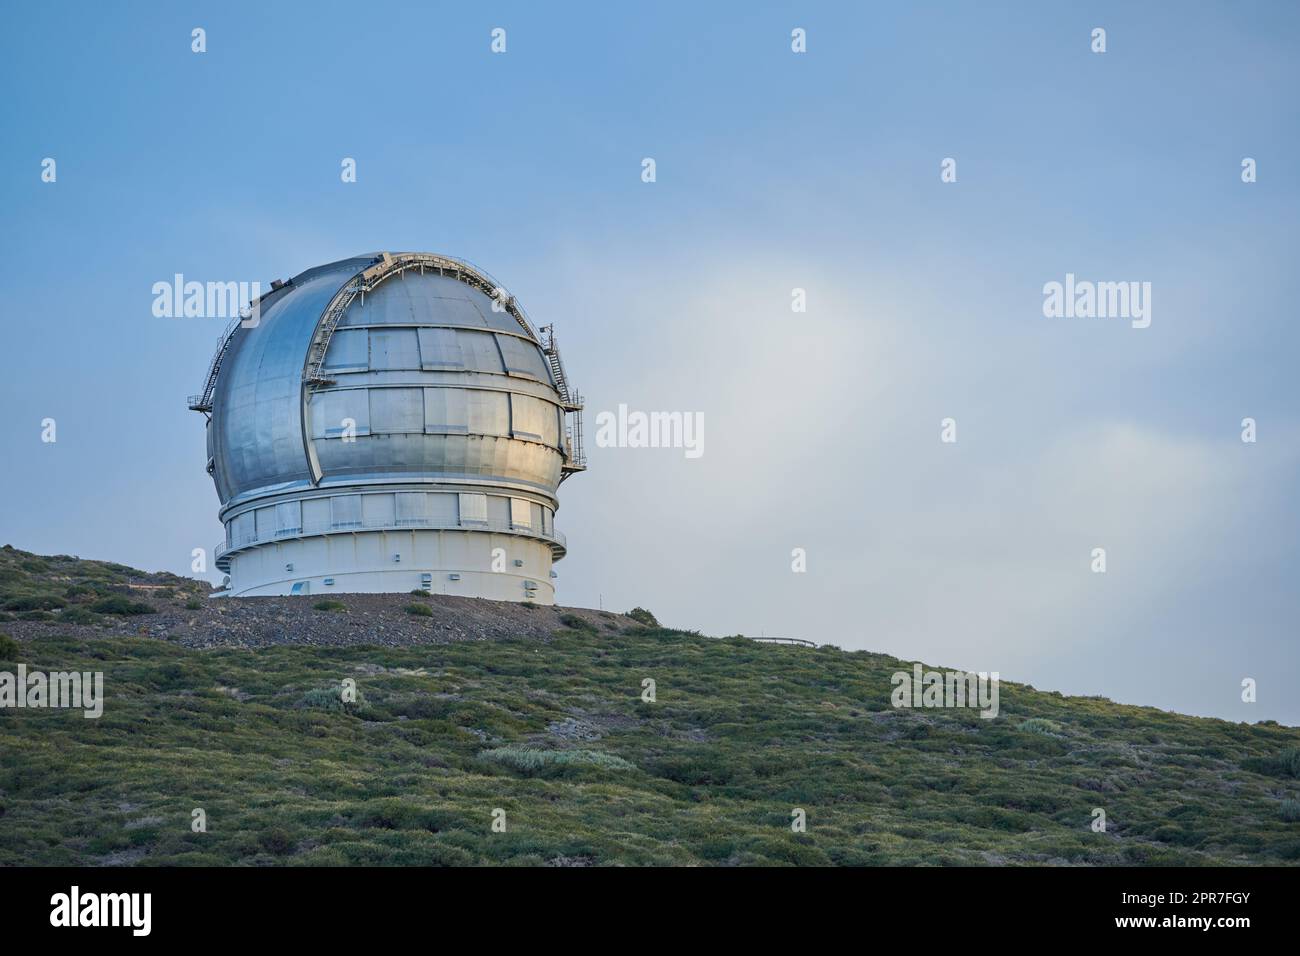 Vue panoramique d'un dôme d'observatoire astronomique à Roque de los Muchachos, la Palma, Espagne. Paysage d'infrastructure scientifique ou bâtiment contre un ciel bleu et un espace de copie. Tourisme à l'étranger ou à l'étranger Banque D'Images